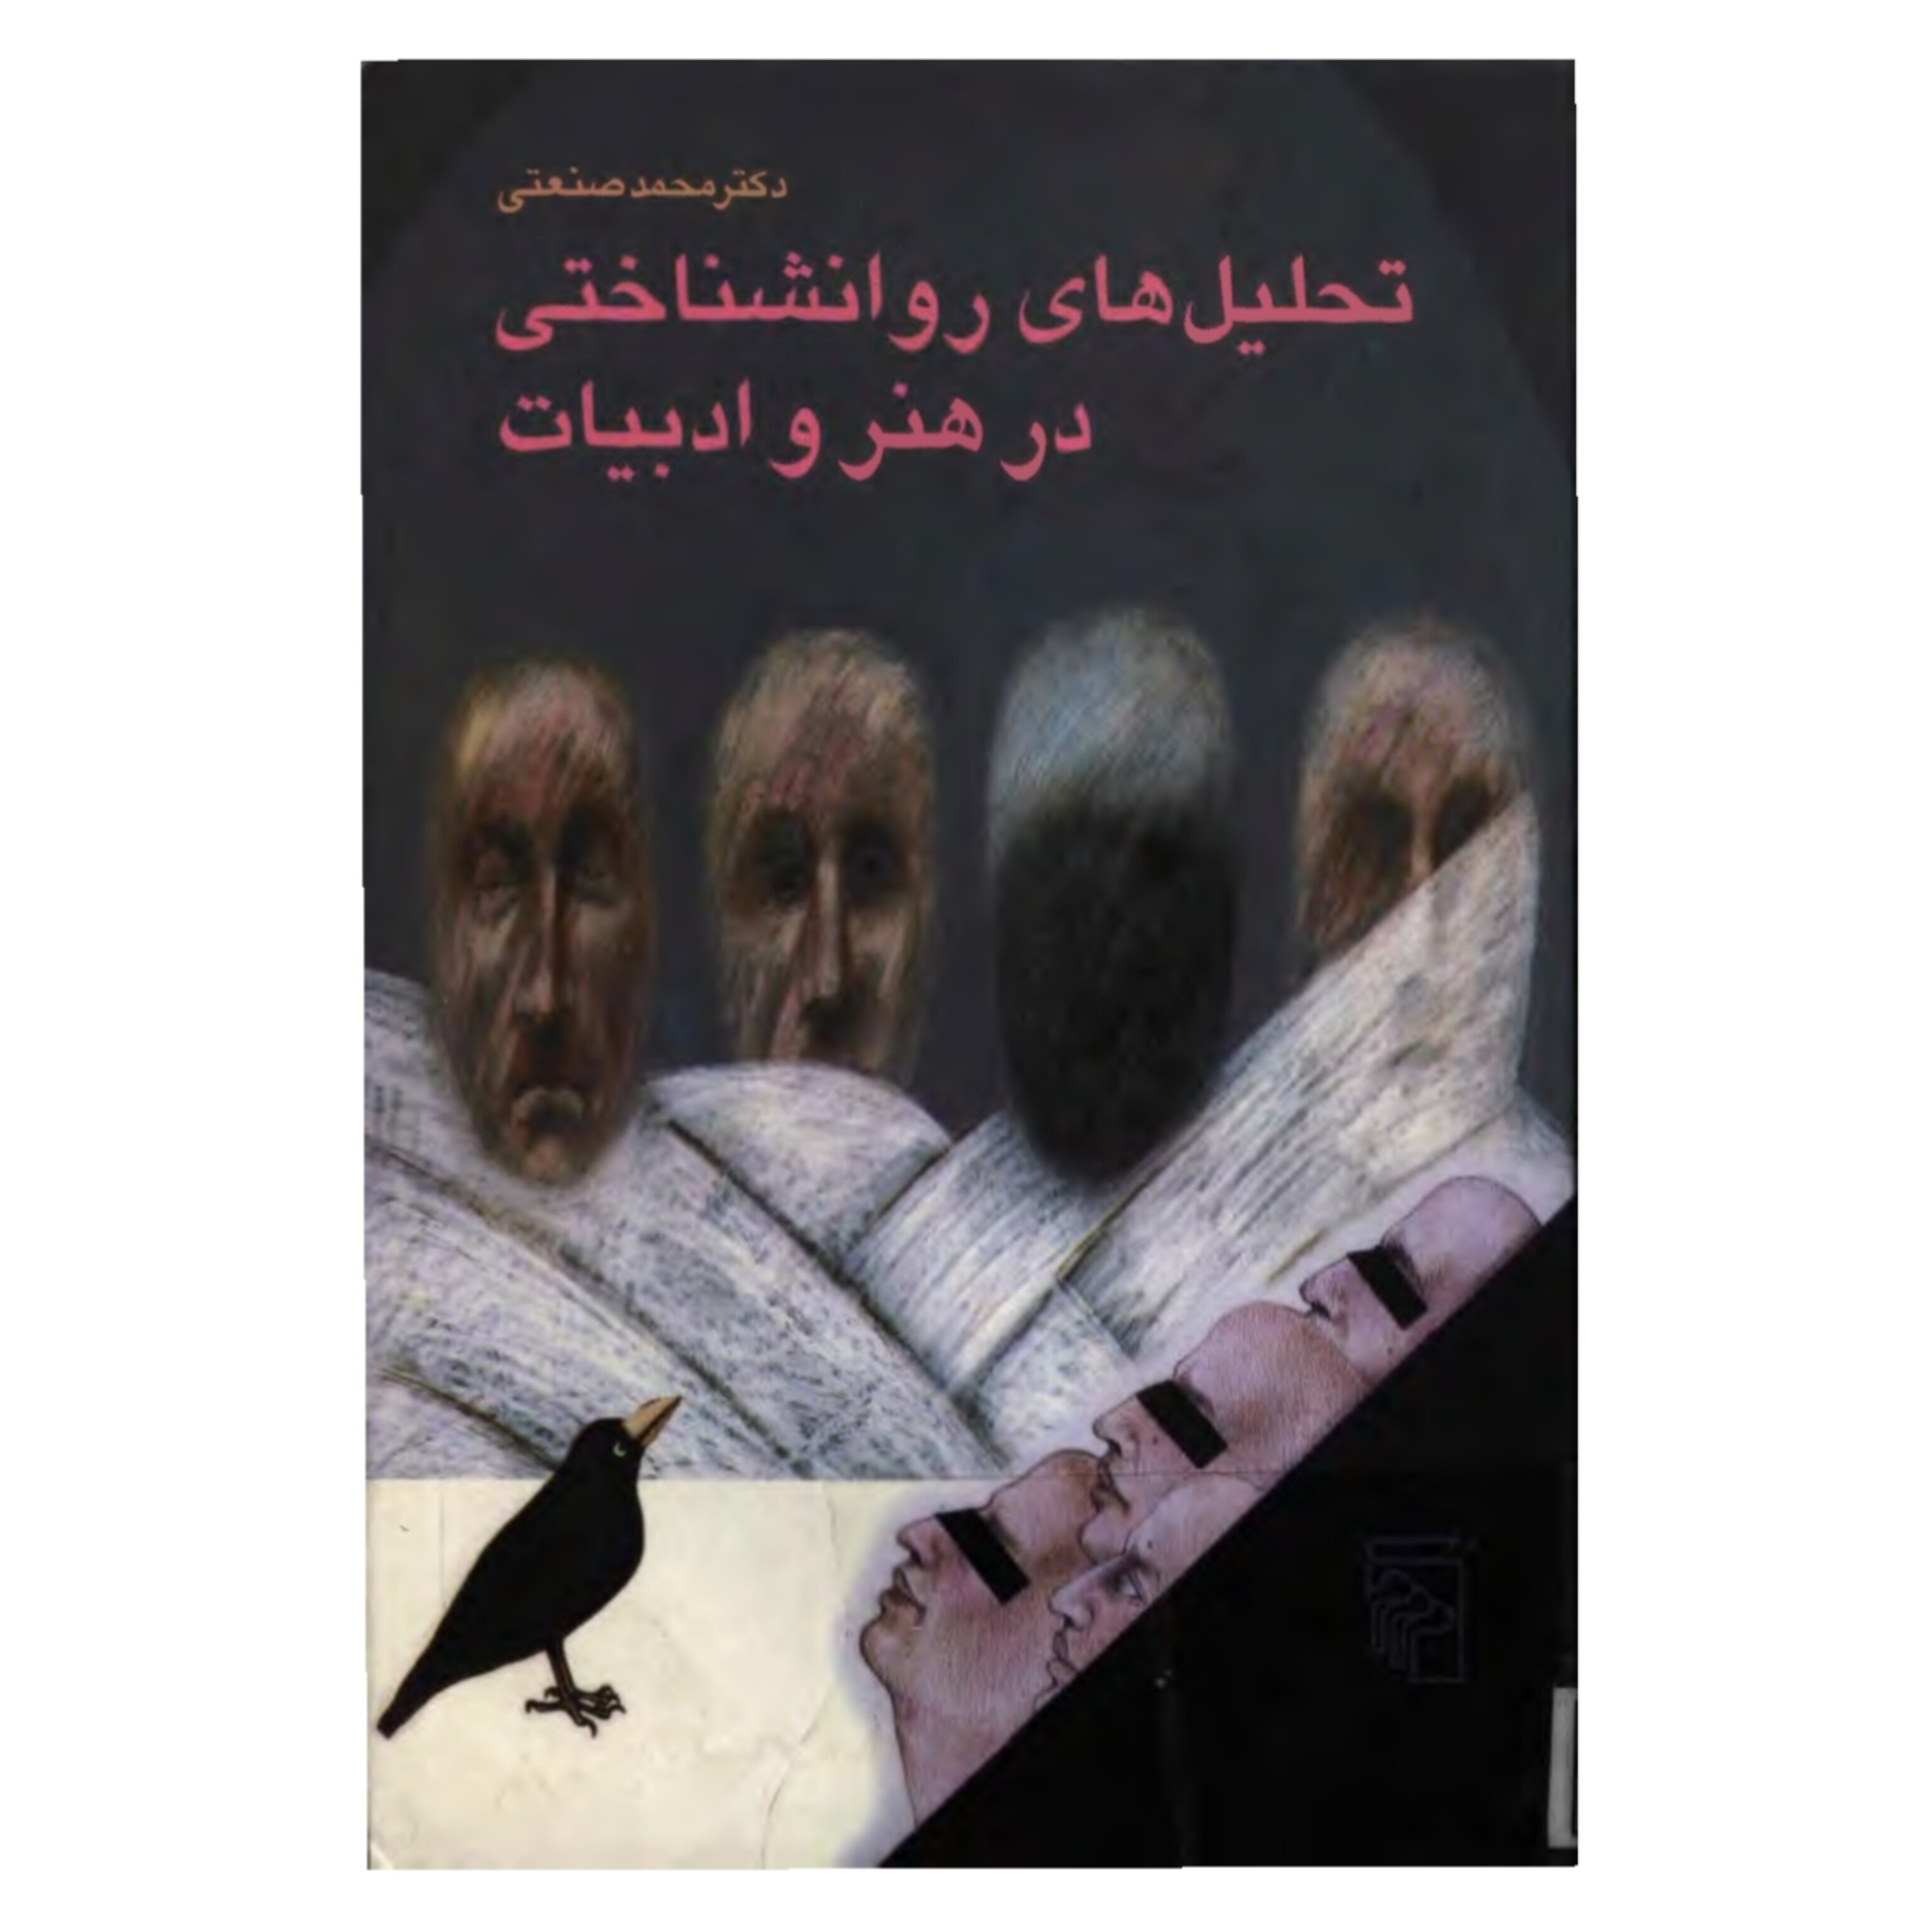 کتاب تحلیل های روانشناختی در هنر و ادبیات/ محمد صنعتی